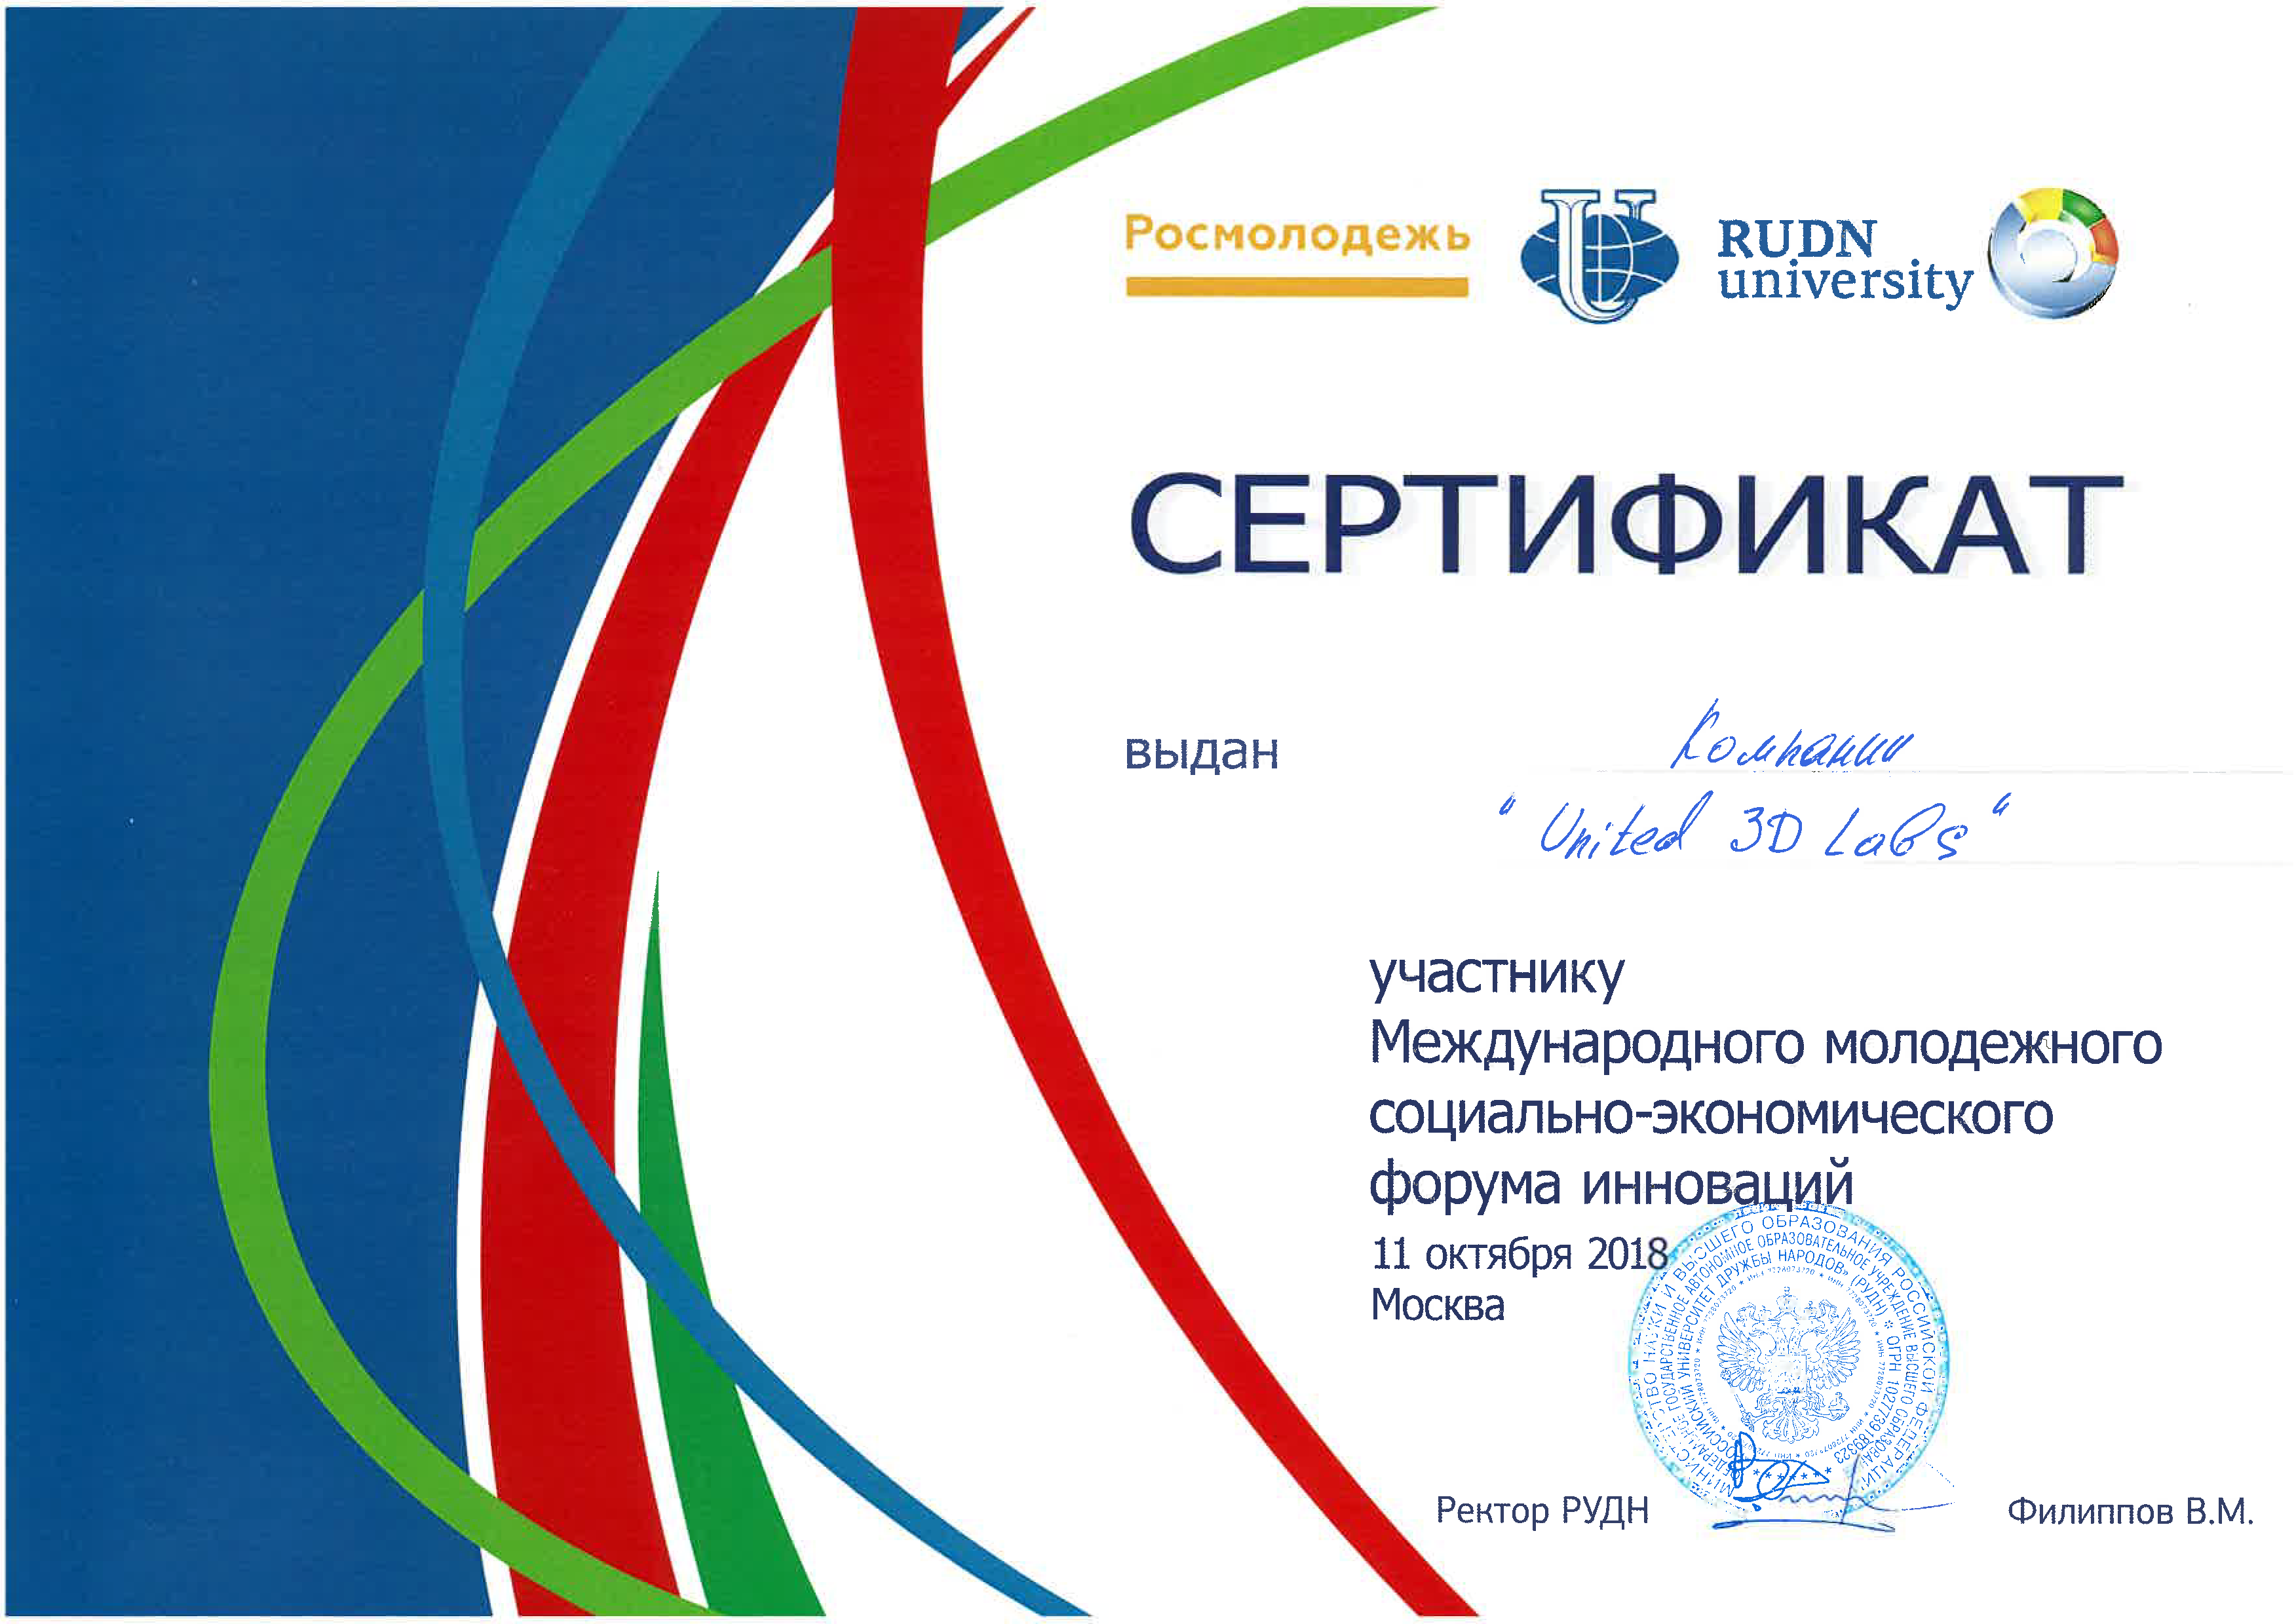 Сертификат участника Форума